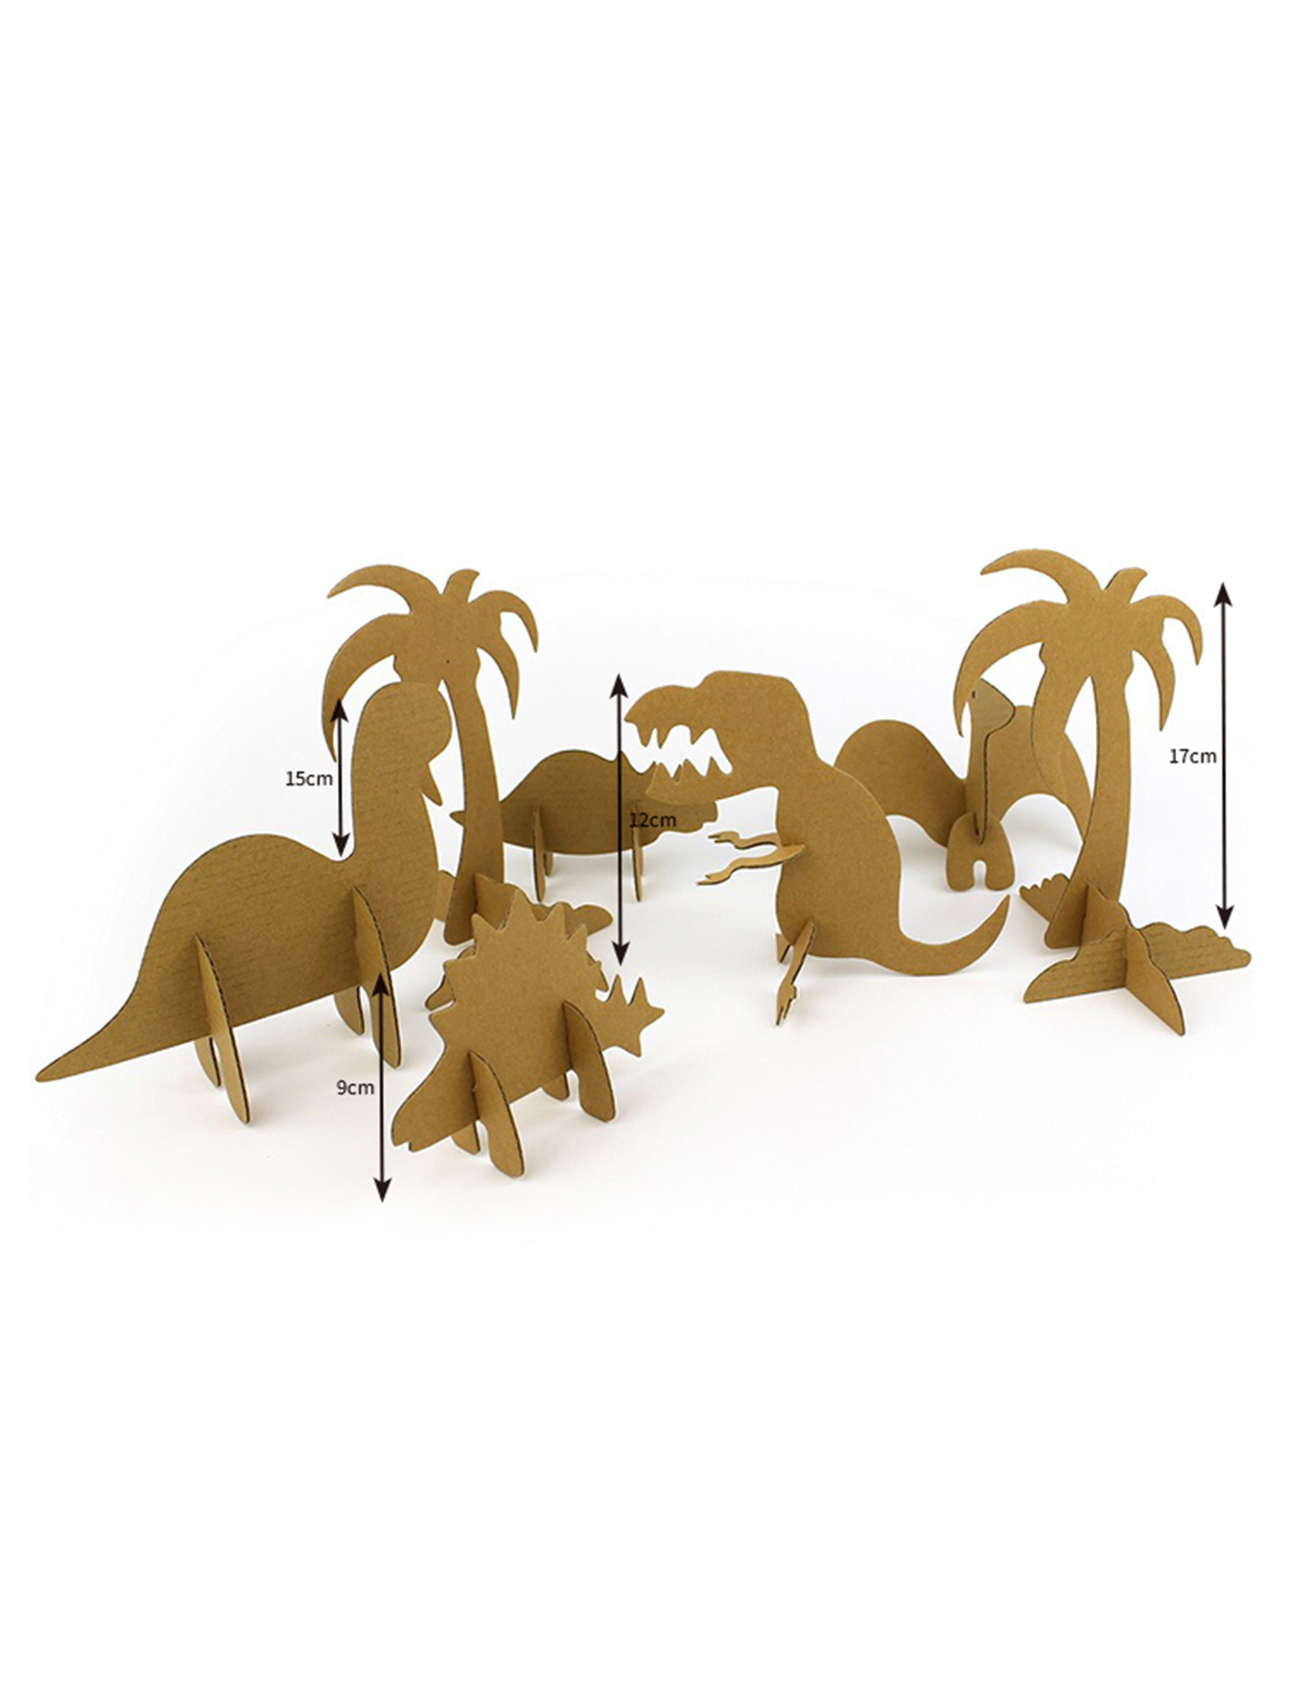 Usoro Dinosaur 3D Puzzle Paper Model maka ụmụaka na-agbakọta na doodling CG131 (3)